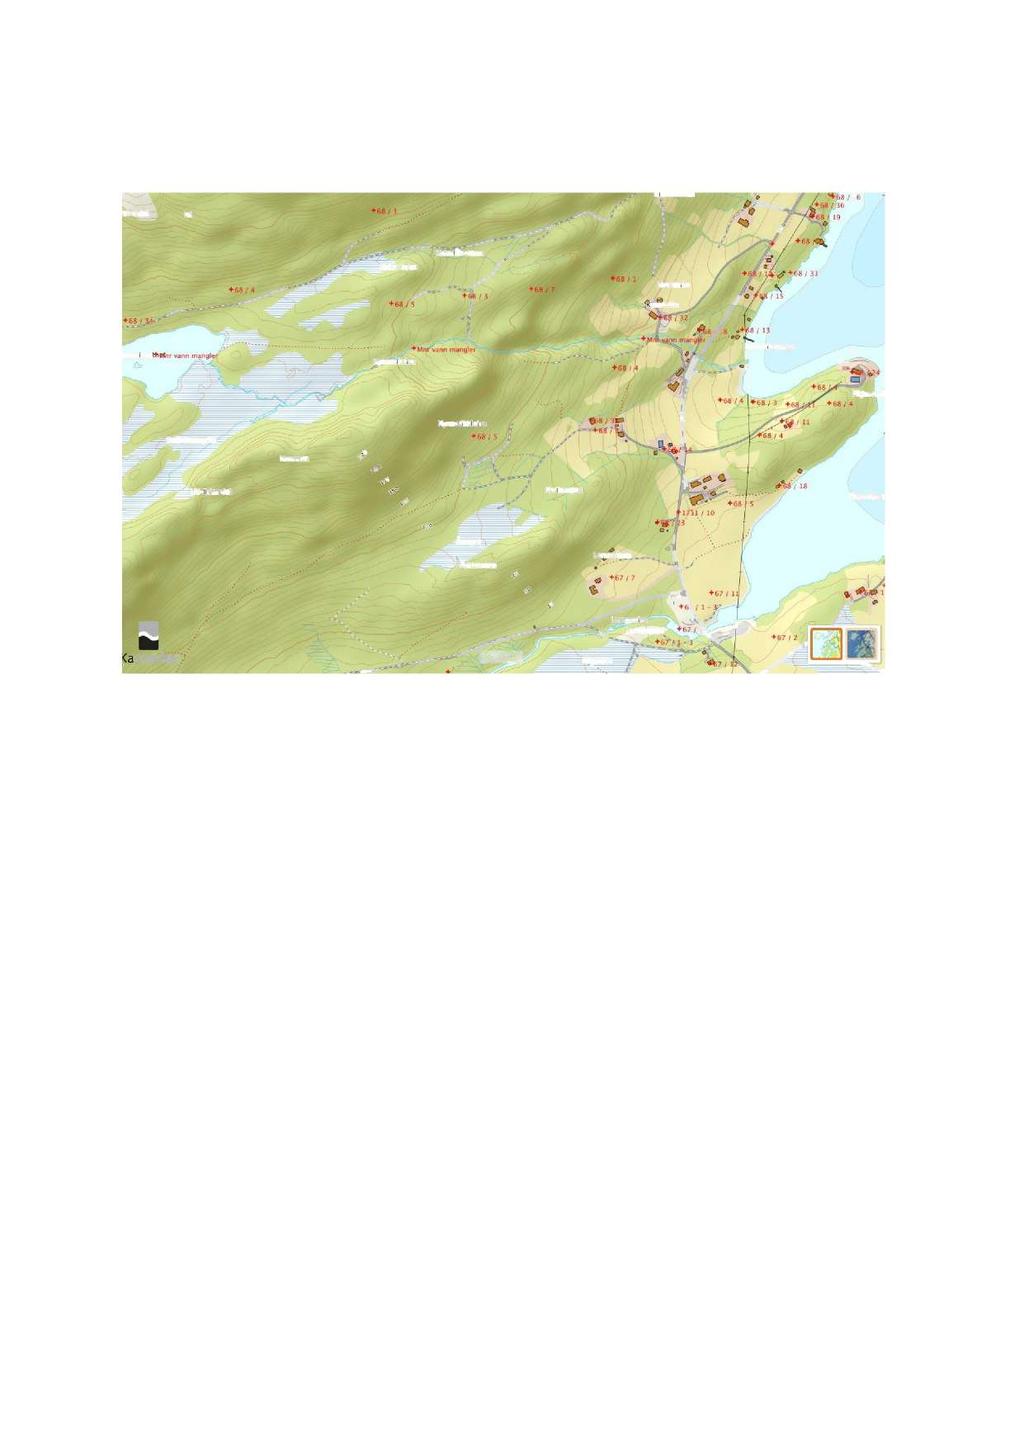 3. A nalys e : Kart og satel ittdata Figur 3 Grunnkart(Norgeskart.no) Det er utført kartanalyse basert på grunnkart.